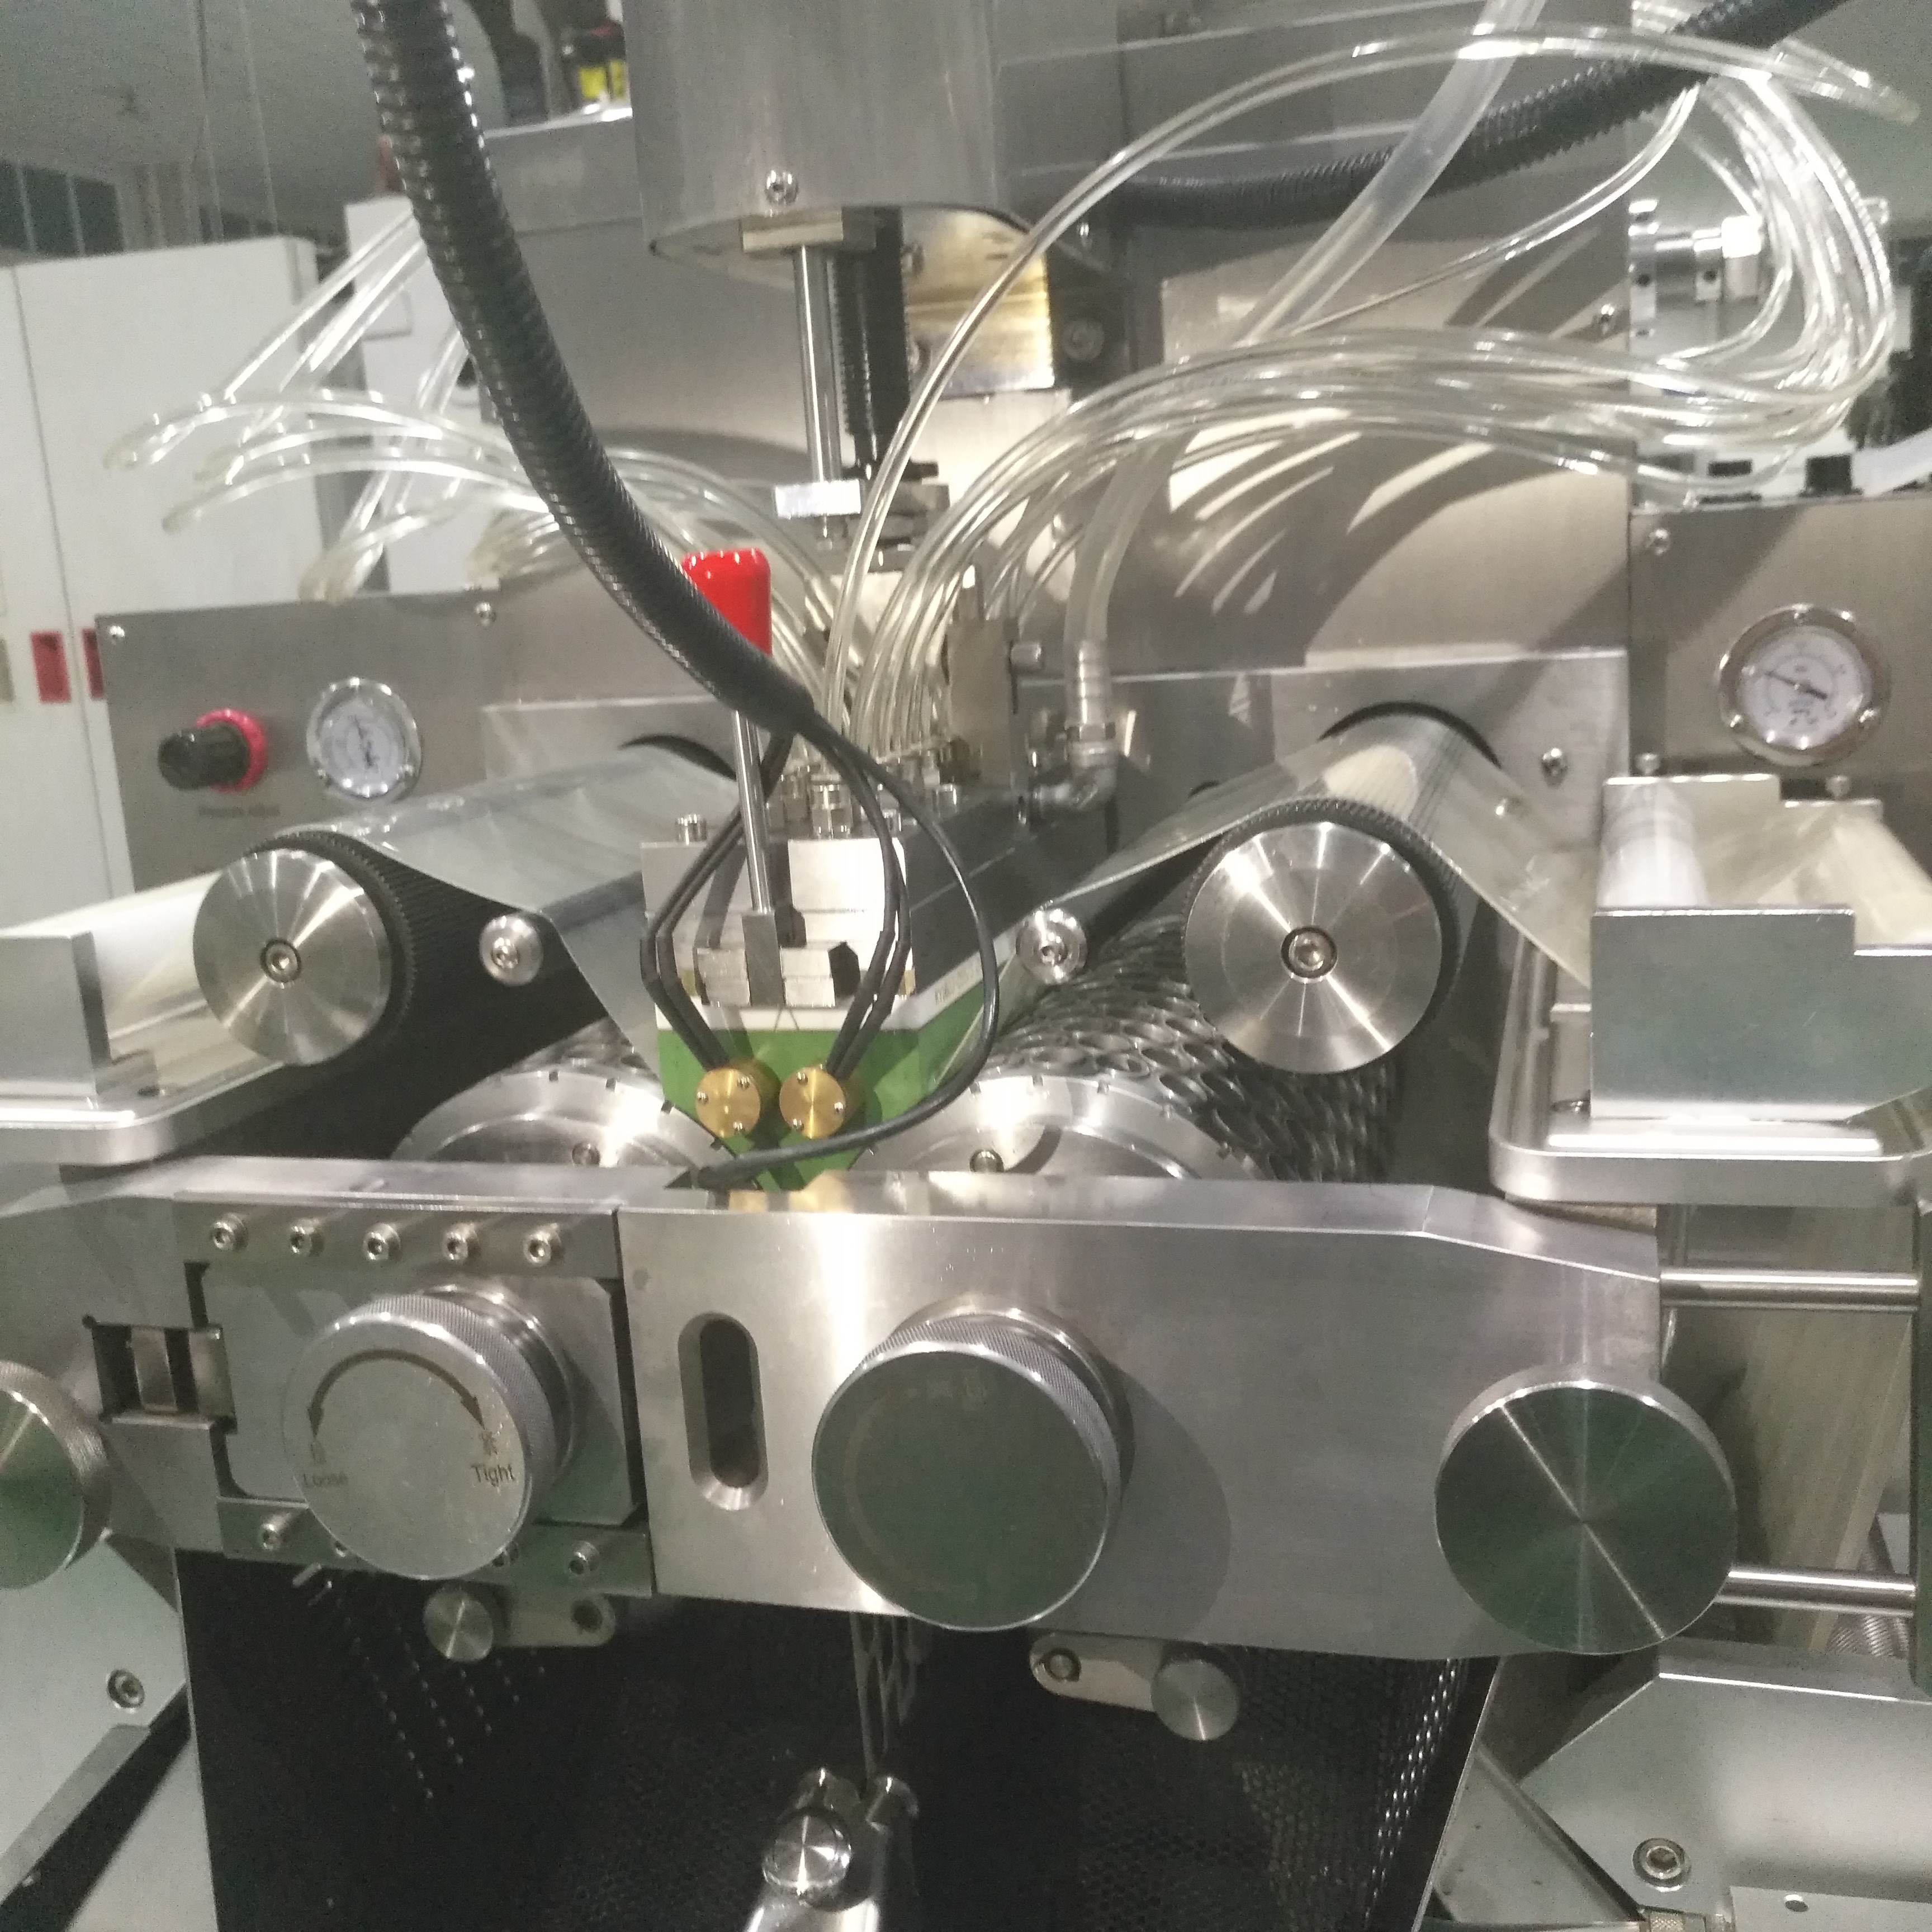 آلة صنع كرات الطلاء الأوتوماتيكية الكاملة S610 عالية الكفاءة حاصلة على شهادة CE